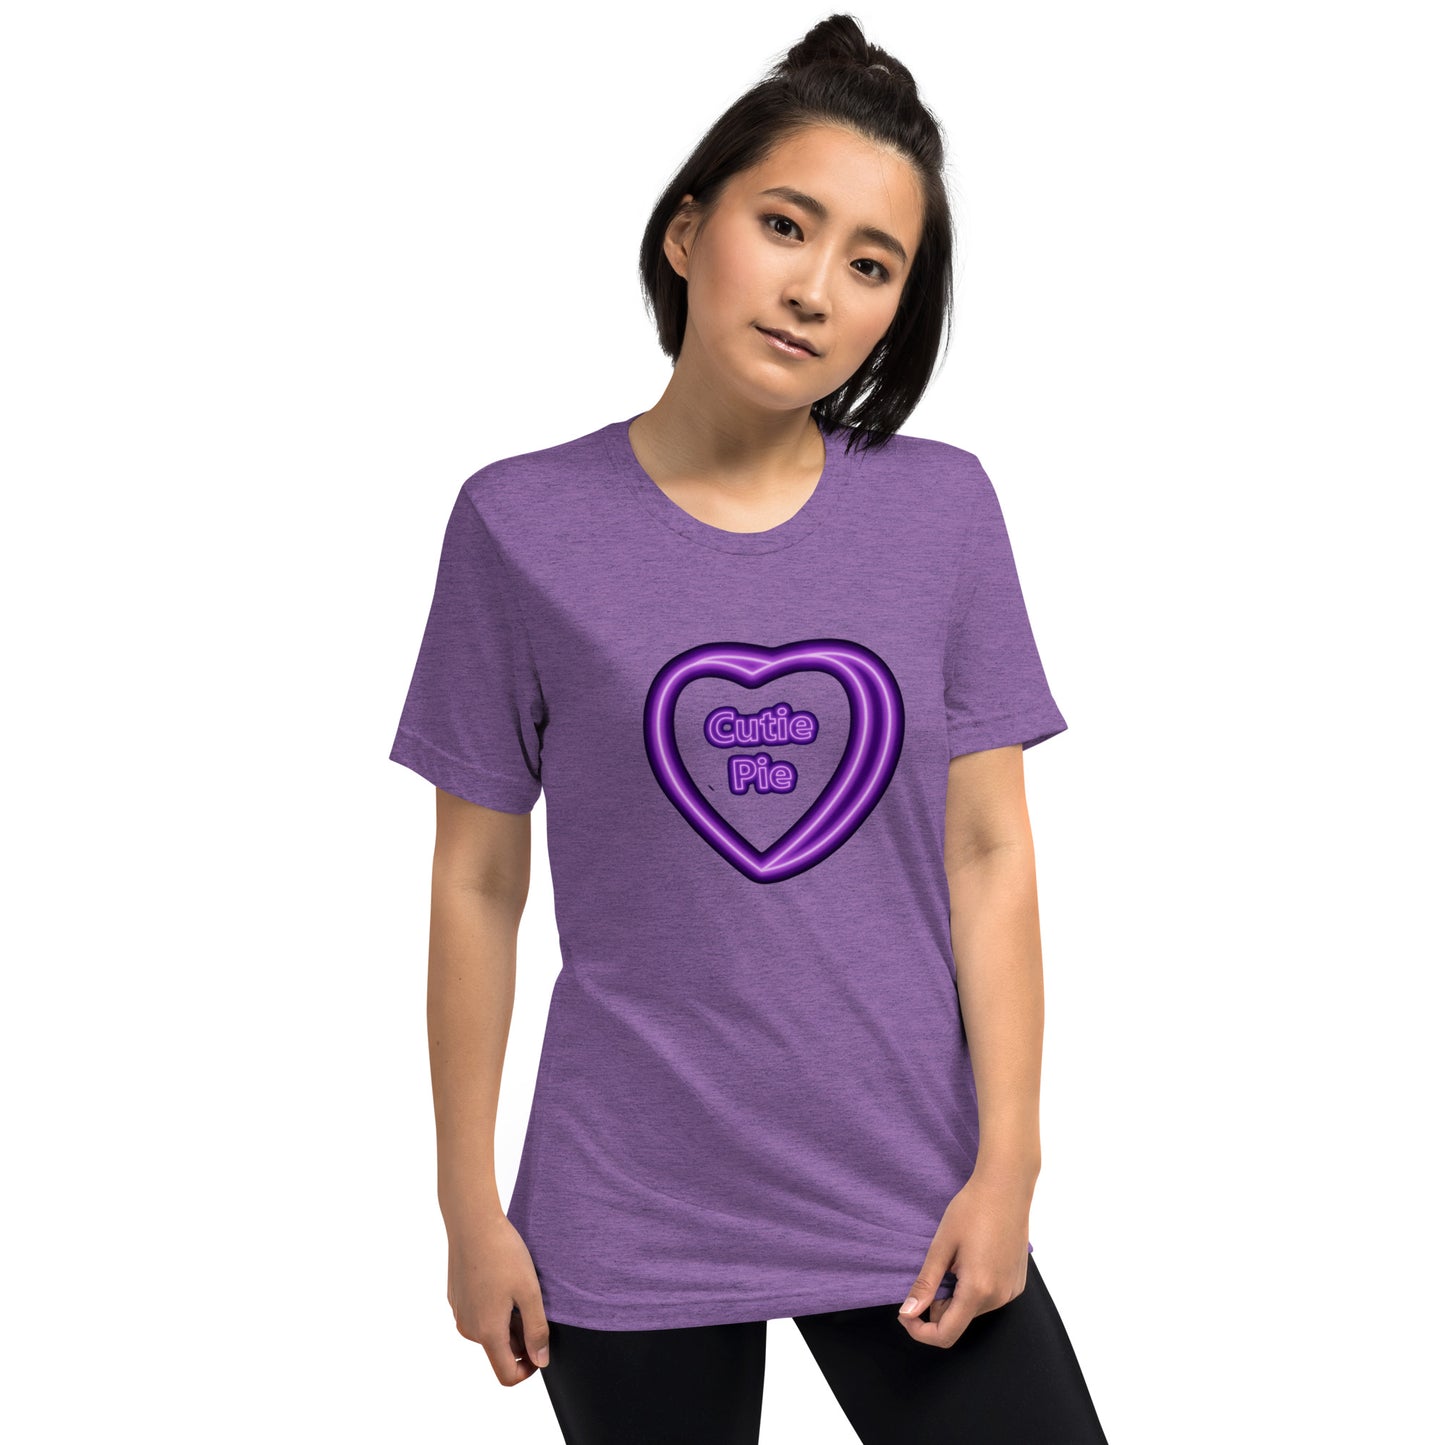 "Cutie Pie" Neon Candy Heart Short sleeve t-shirt